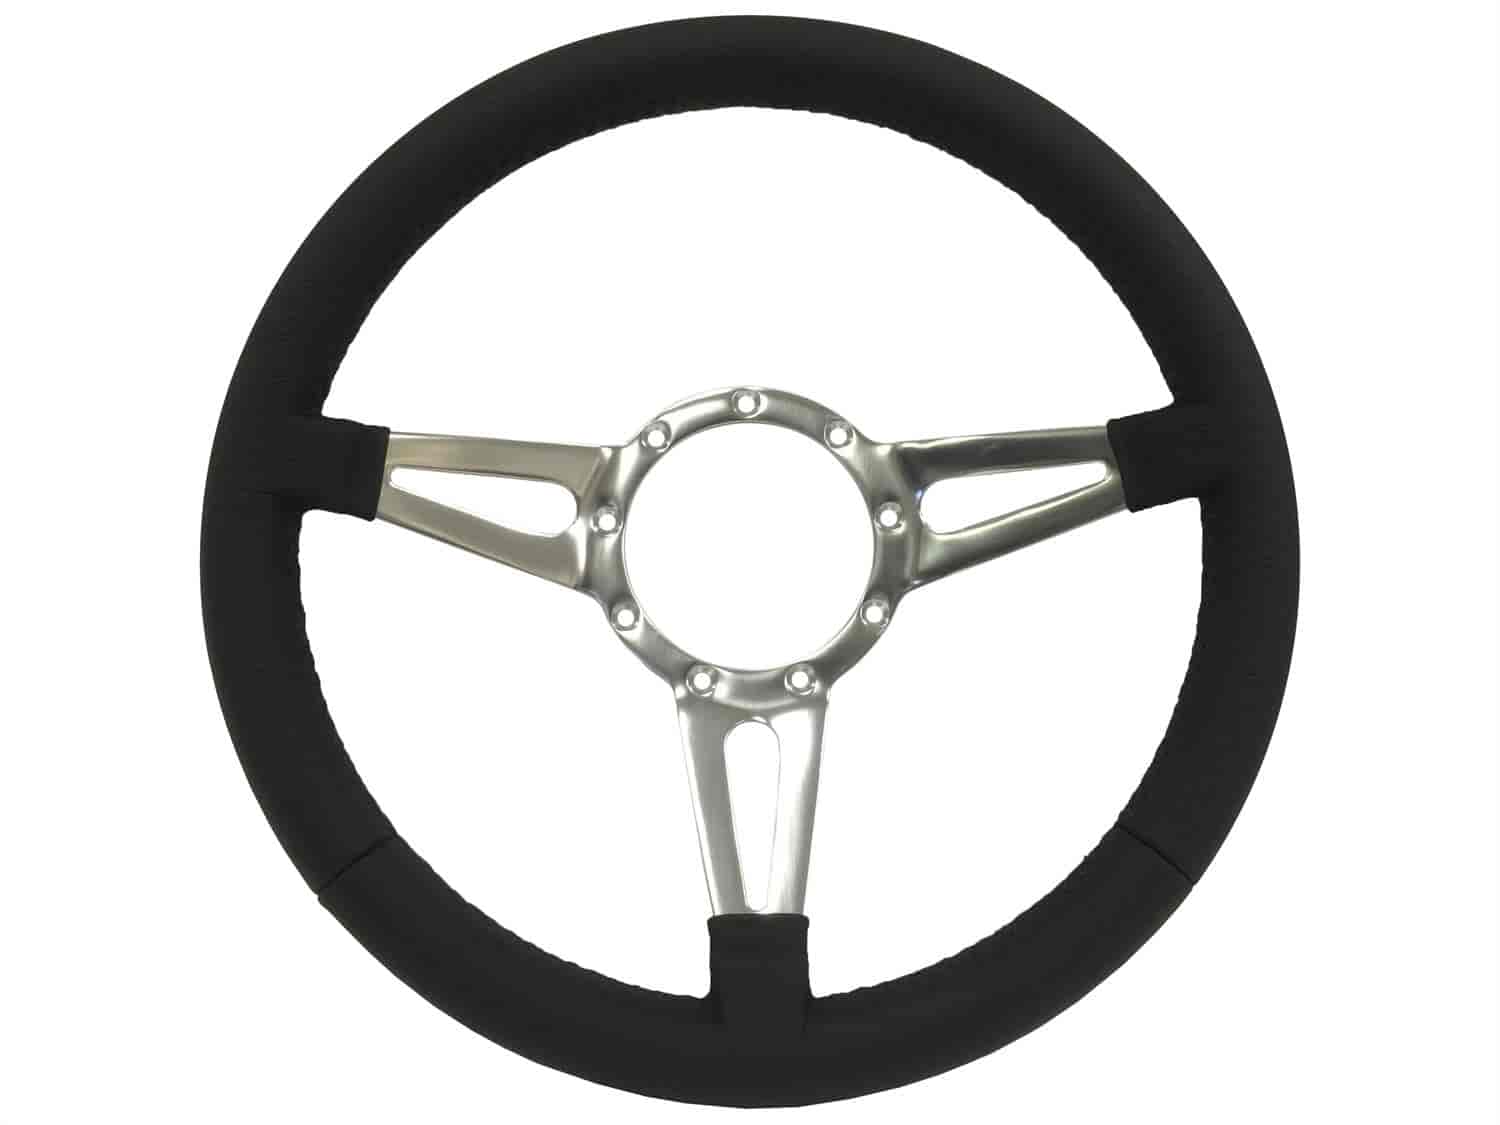 S9 Sport Steering Wheel, 14 in. Diameter, Premium Black Leather Grip